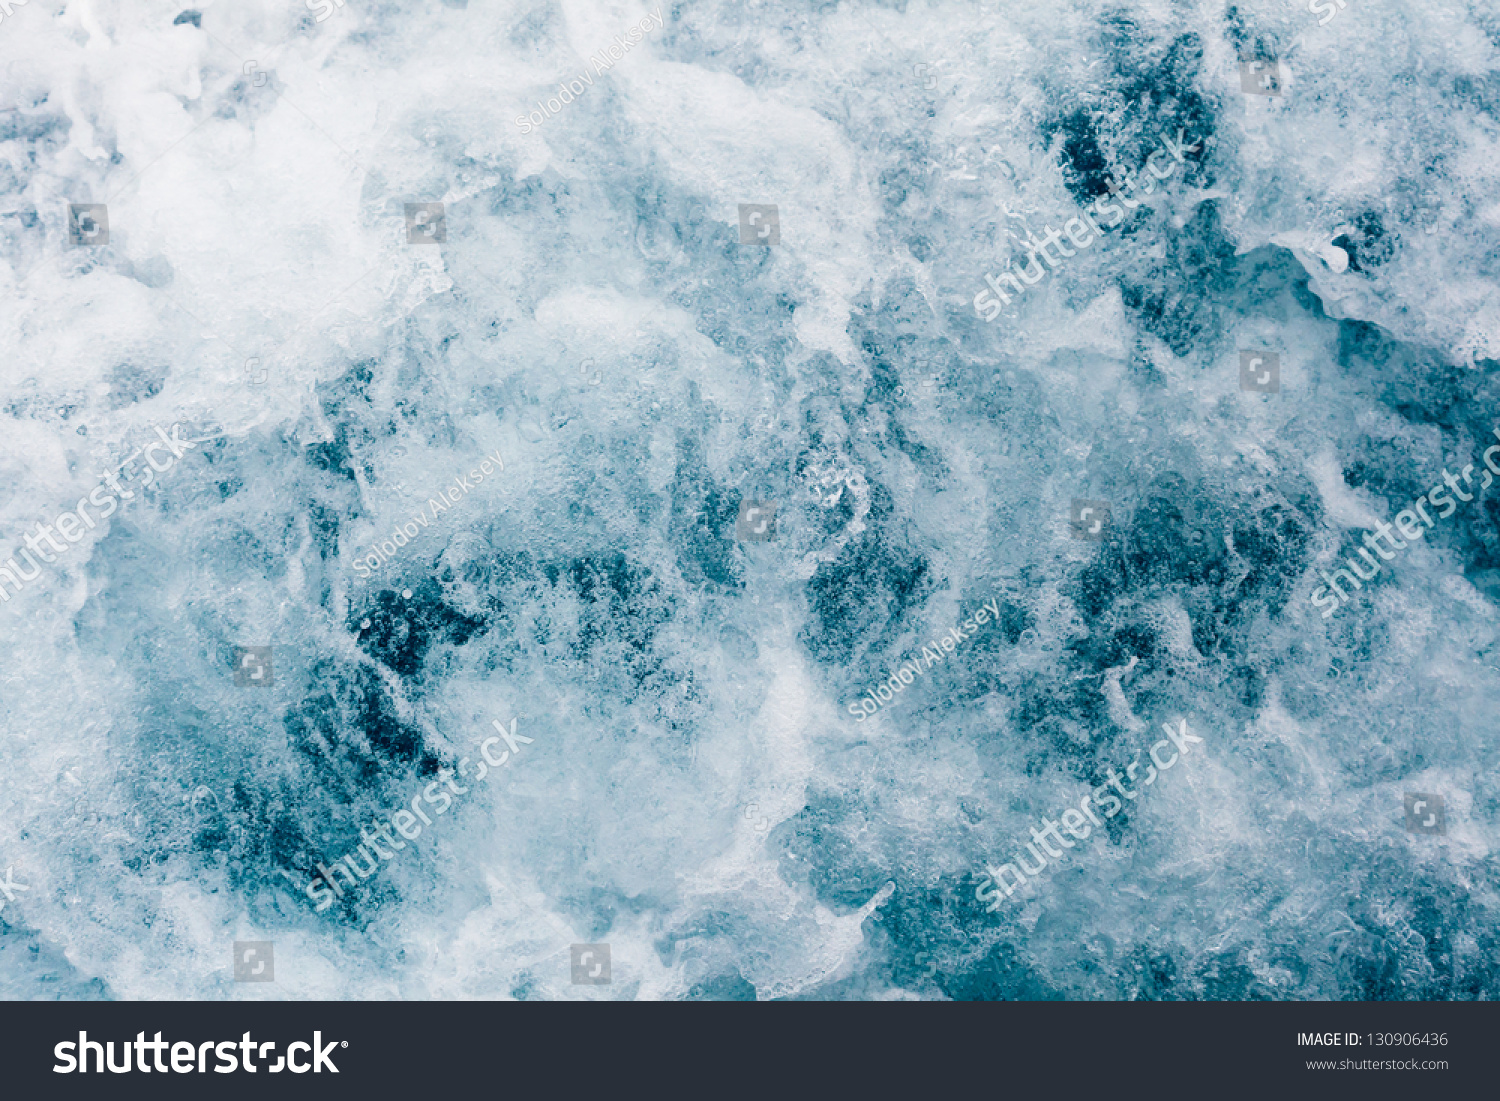 Foam Of The Sea Stock Photo 130906436 : Shutterstock